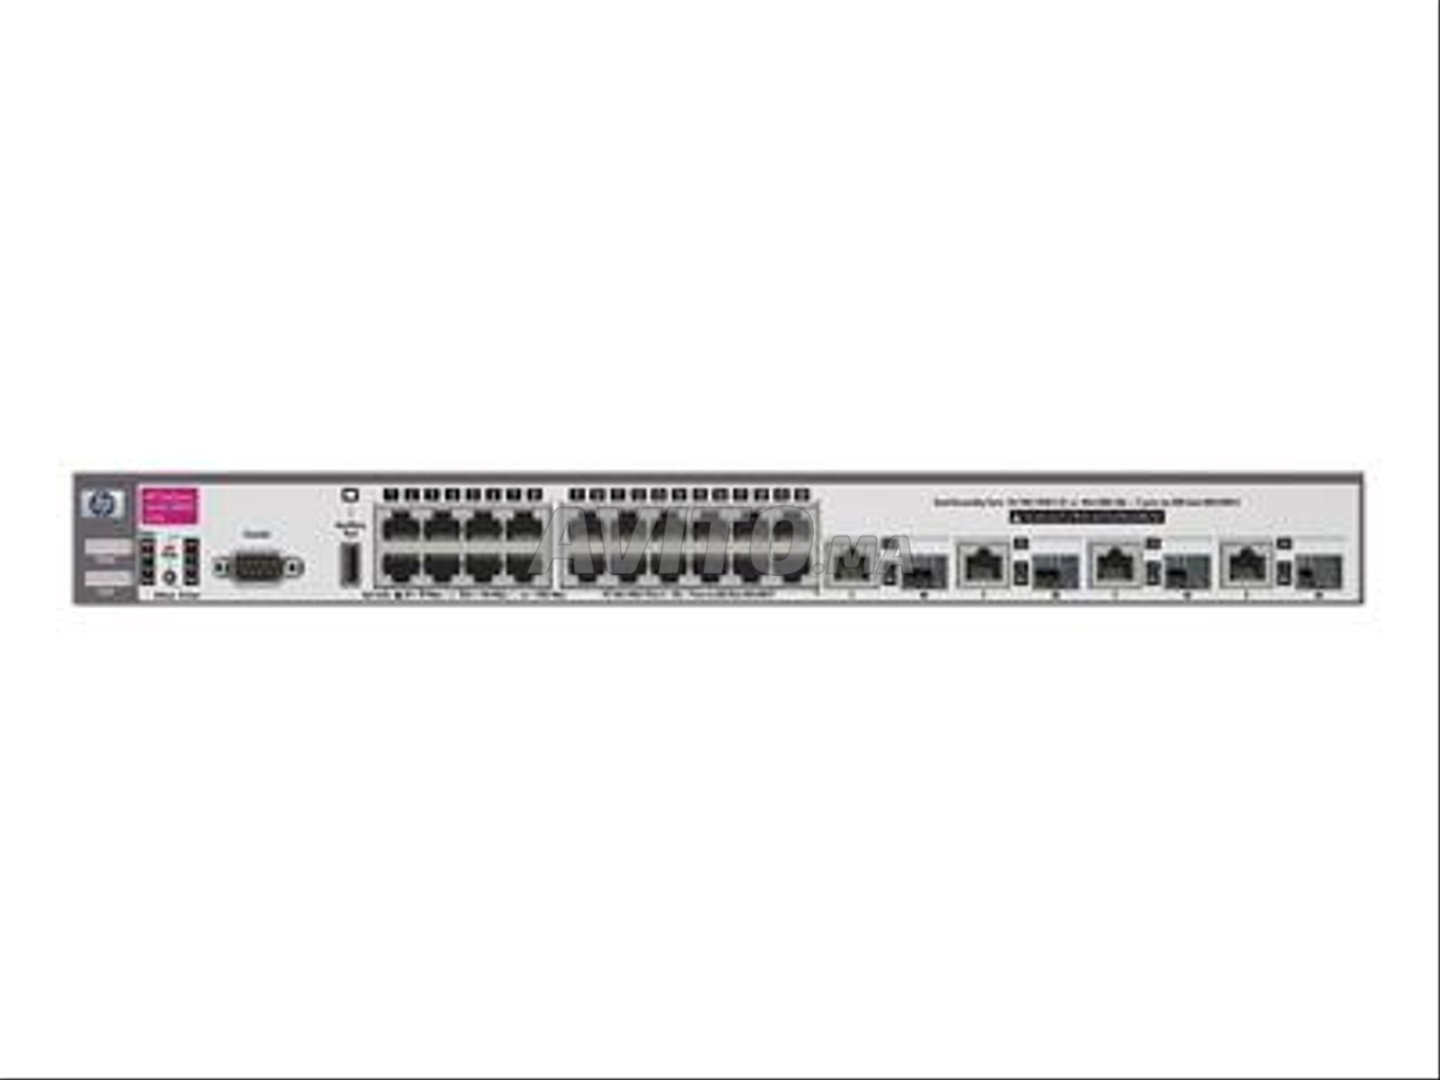 HP J4905A - HP procurve switch 3400 CL-24G - 1